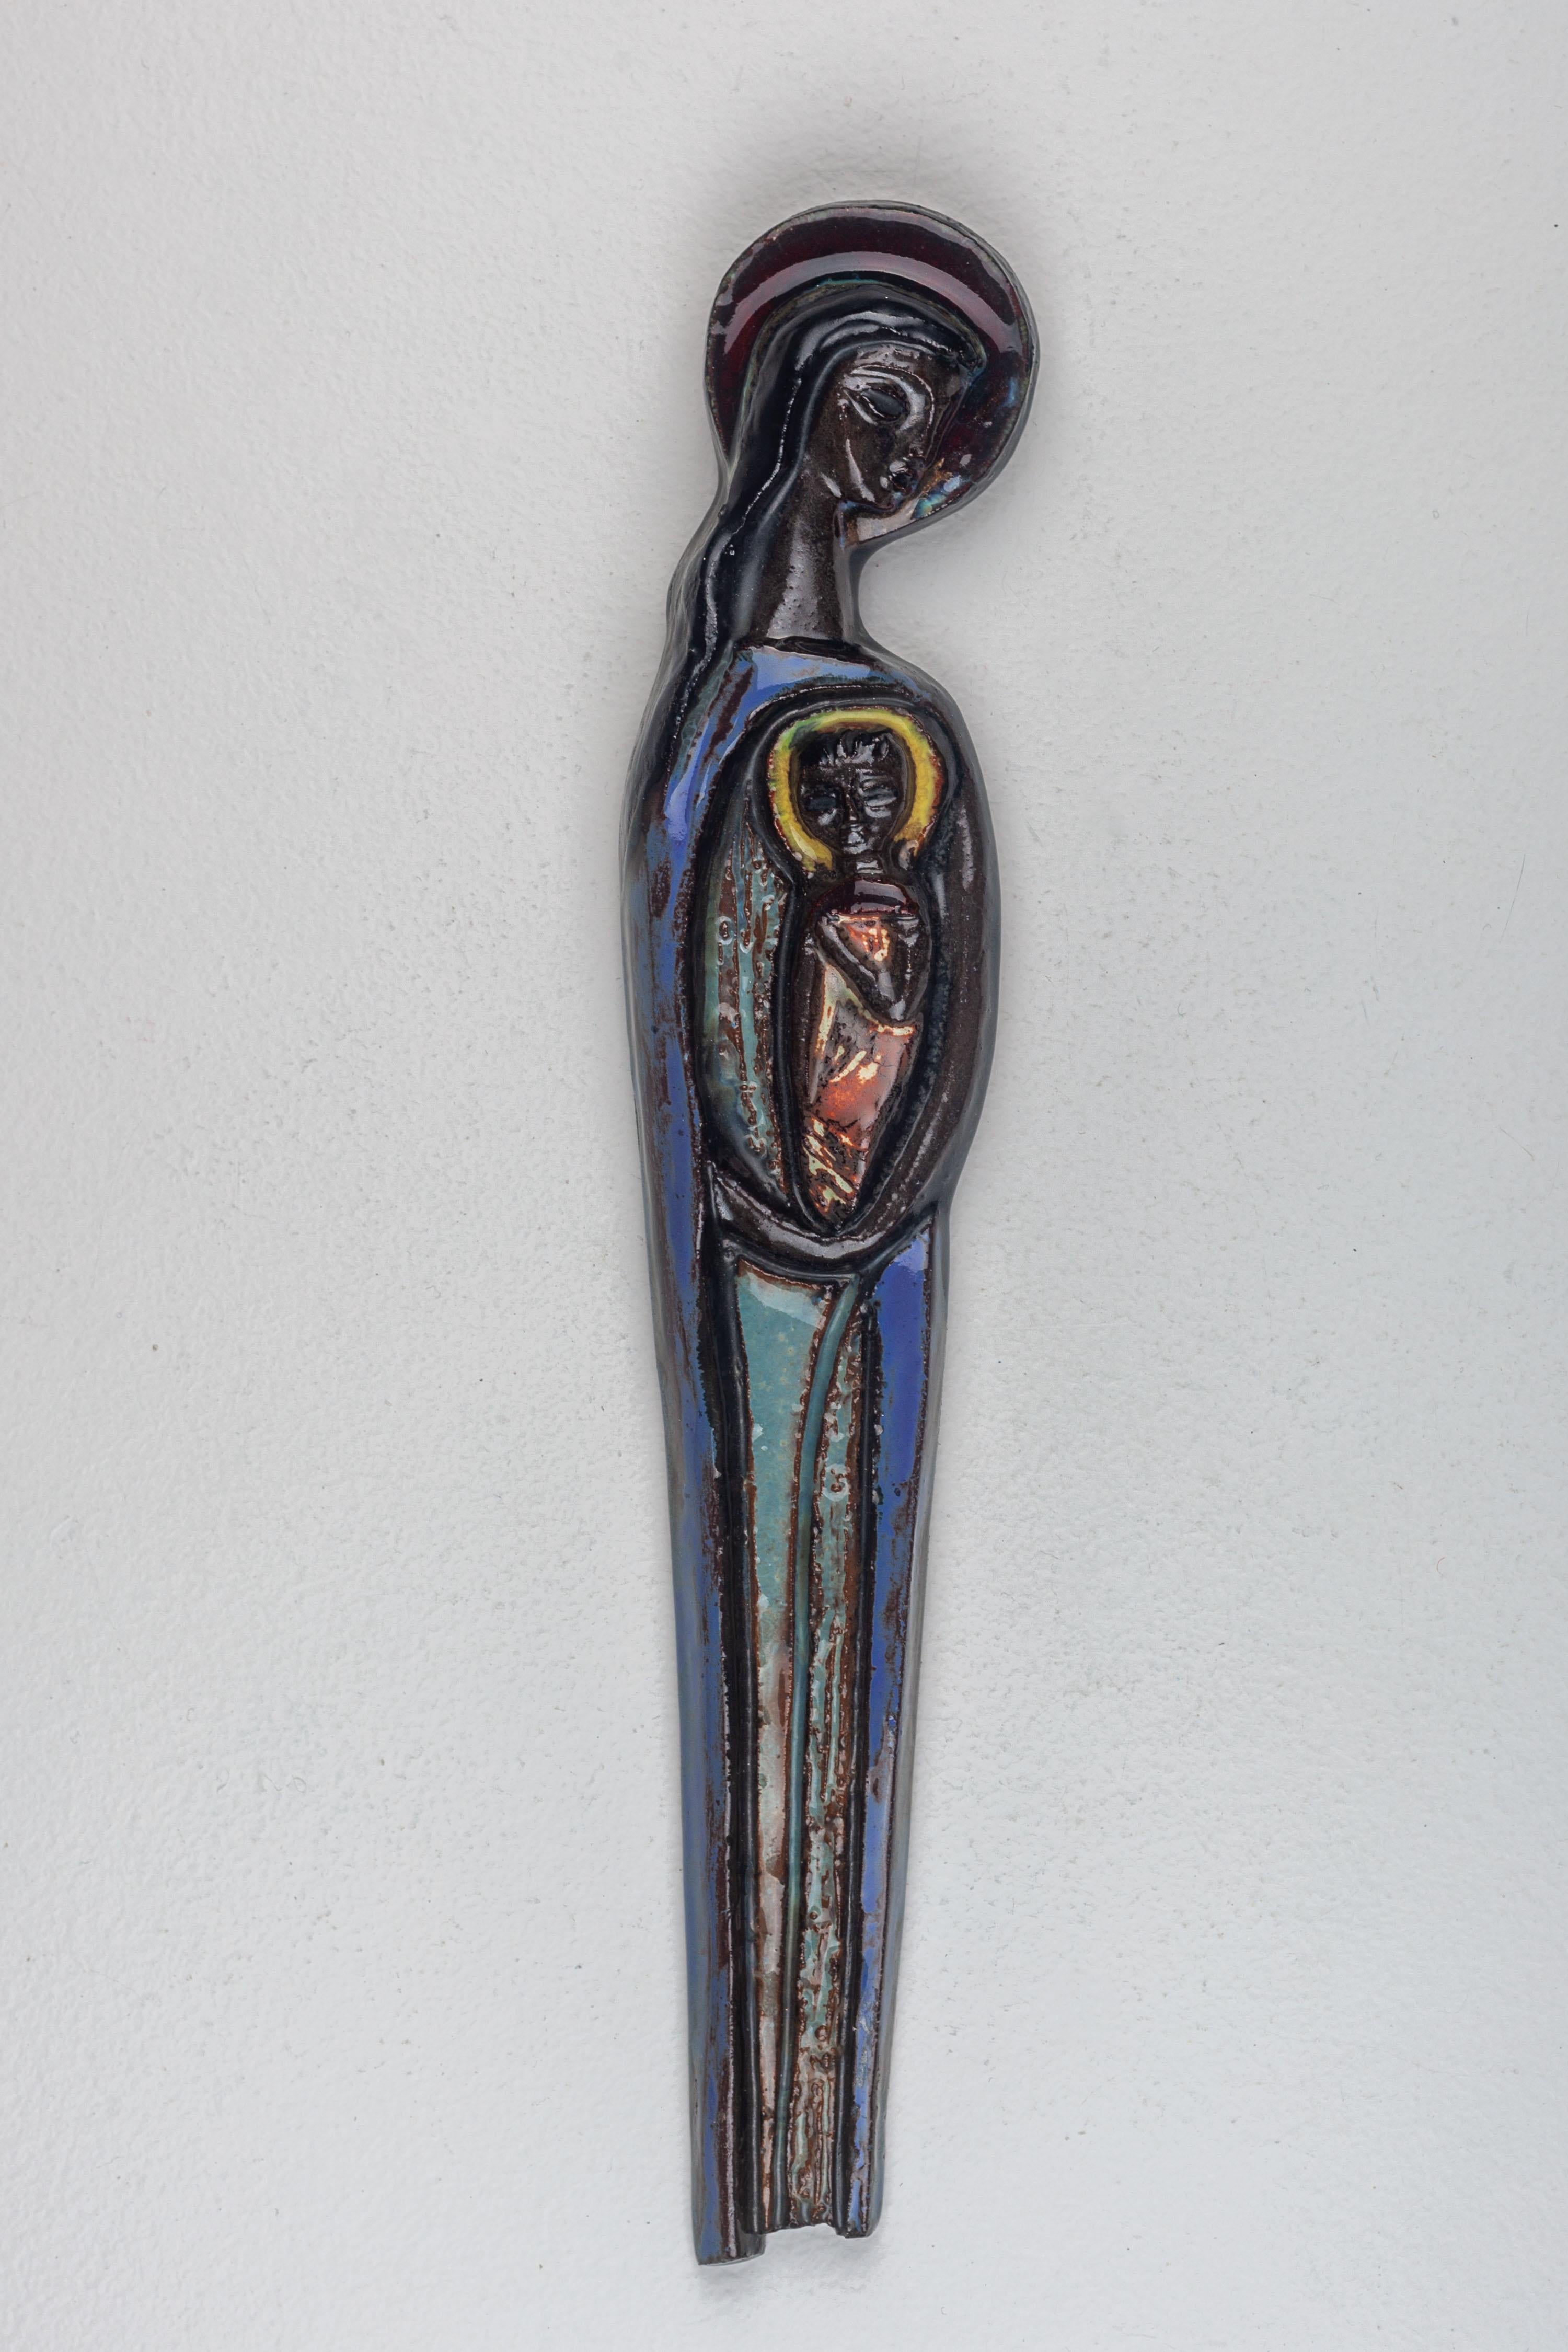 Dieses Keramik-Wandkunstwerk aus der Mitte des Jahrhunderts zeigt die Jungfrau Maria, die das Christuskind in den Armen hält. Die Skulptur zeichnet sich durch ihre tiefe, resonante Farbpalette aus, die aus satten Blautönen und kräftigem Schwarz